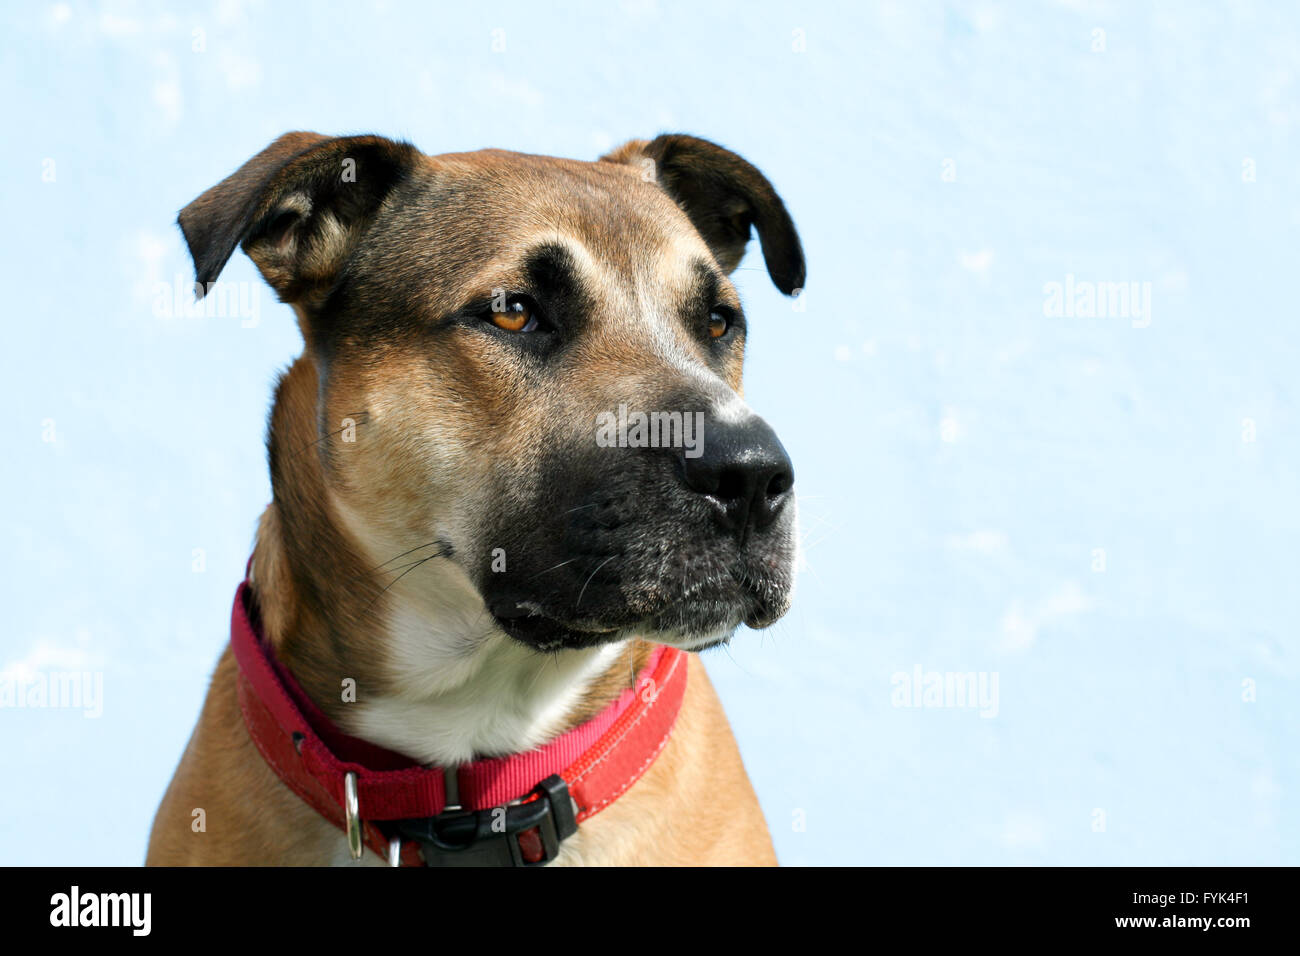 Costaud strong grand mixed breed jeune chien avec les oreilles tombantes, portant un collier rouge ressemble à la droite. Peut-être un mélange d'un pit-bull. Banque D'Images